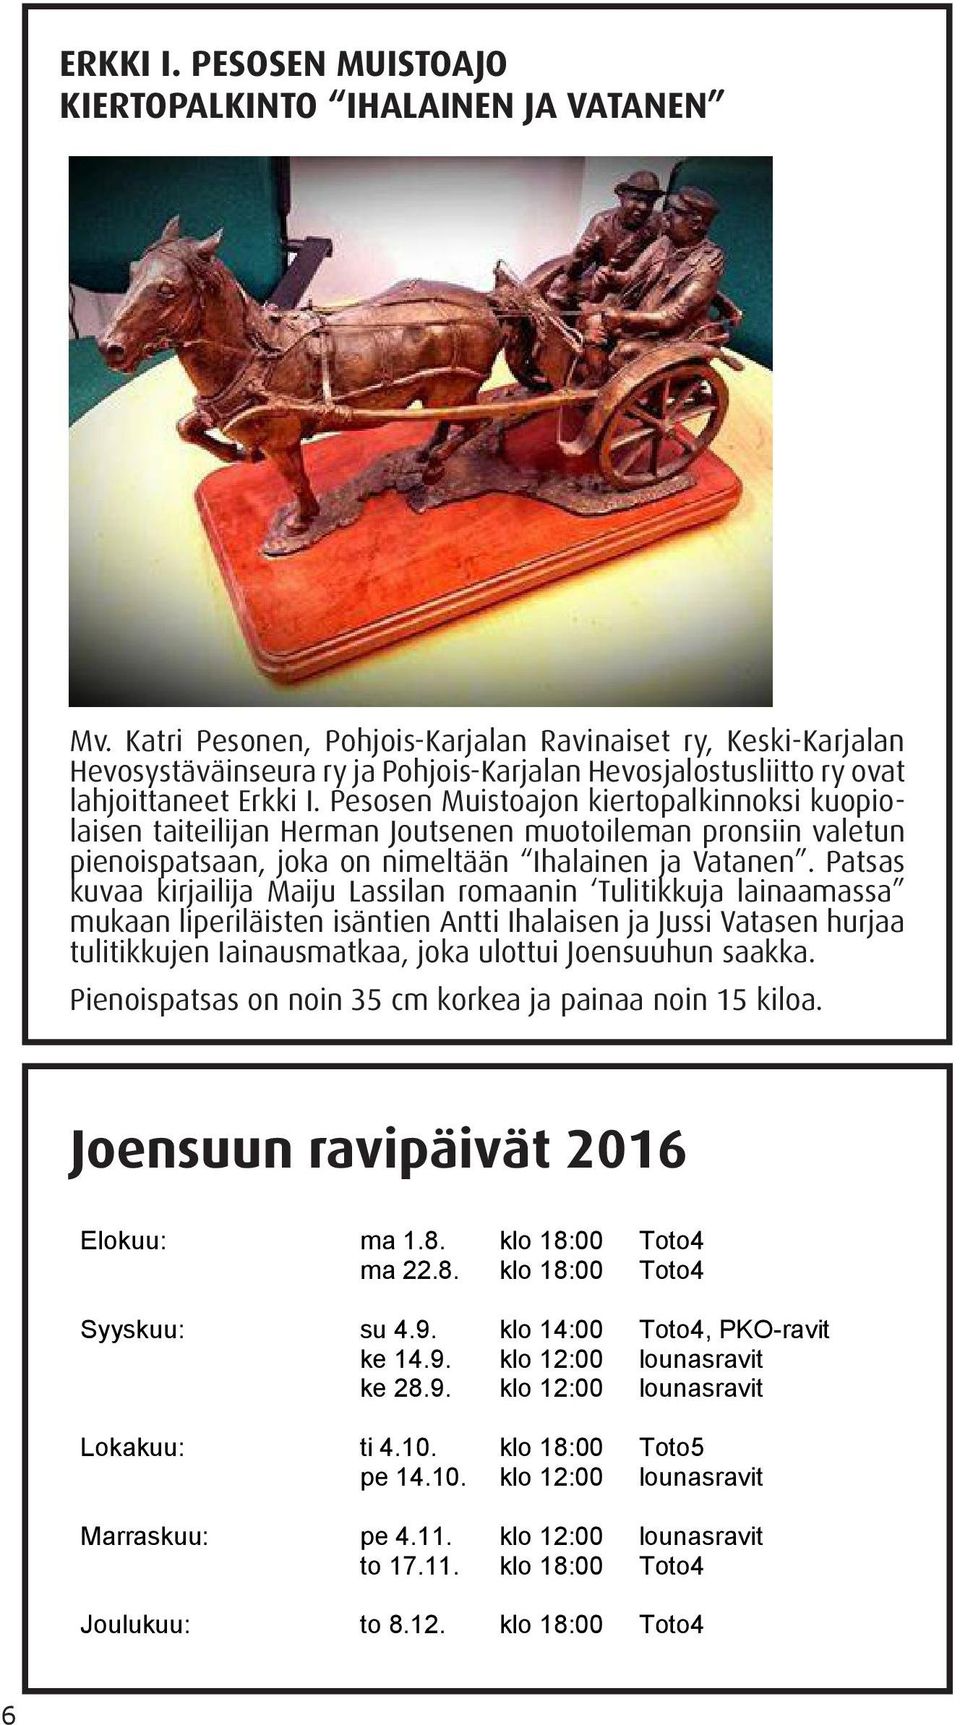 Pesosen Muistoajon kiertopalkinnoksi kuopiolaisen taiteilijan Herman Joutsenen muotoileman pronsiin valetun pienoispatsaan, joka on nimeltään Ihalainen ja Vatanen.